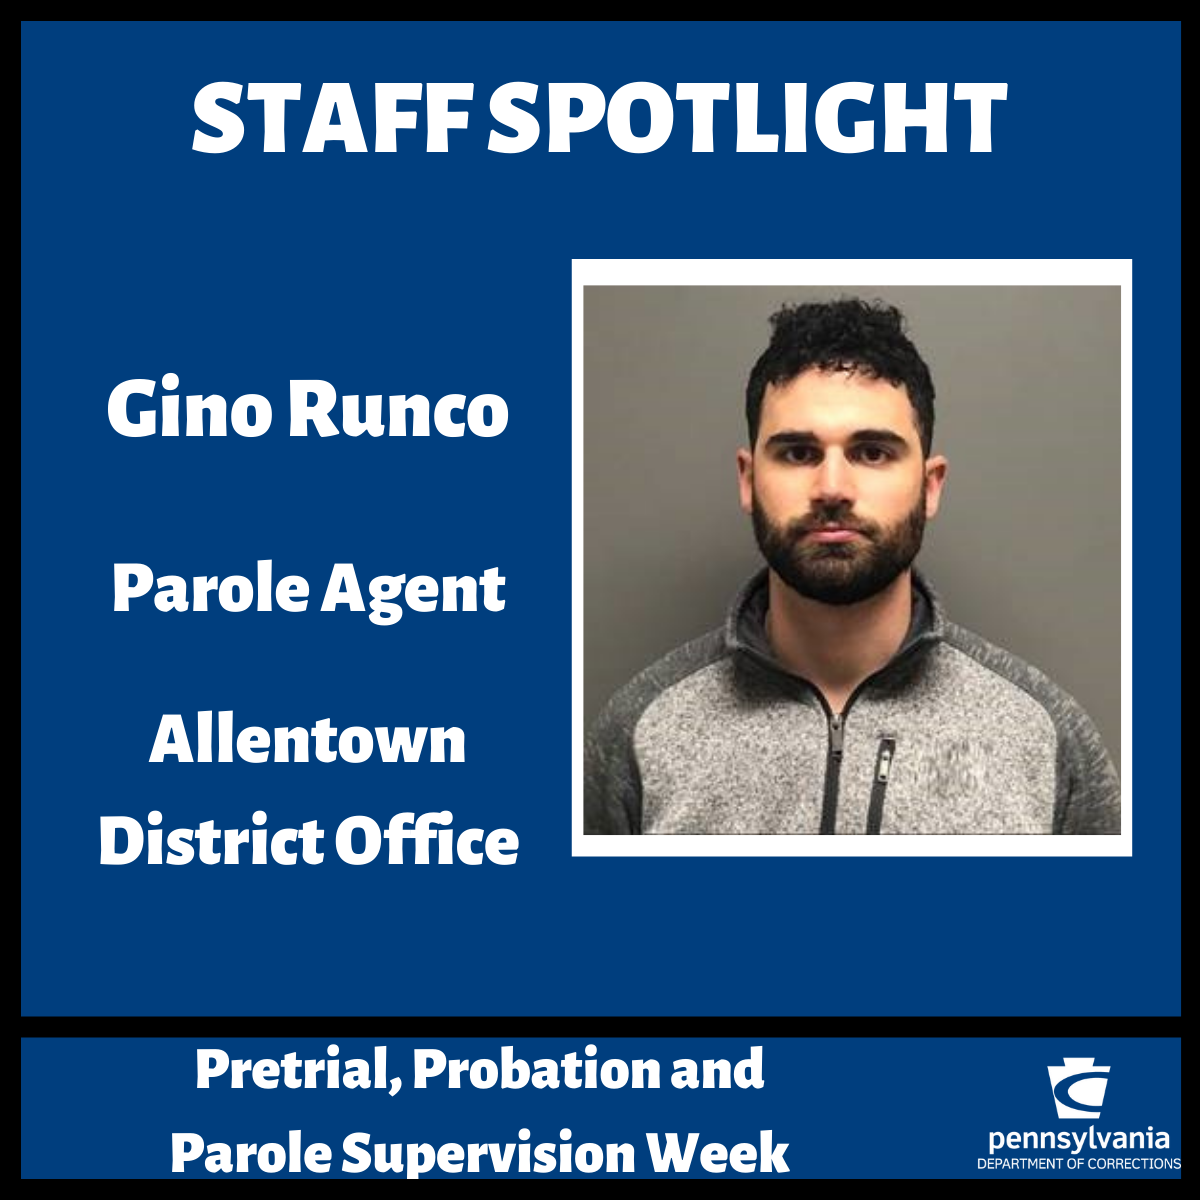 A graphic honoring parole agent Gino Runco